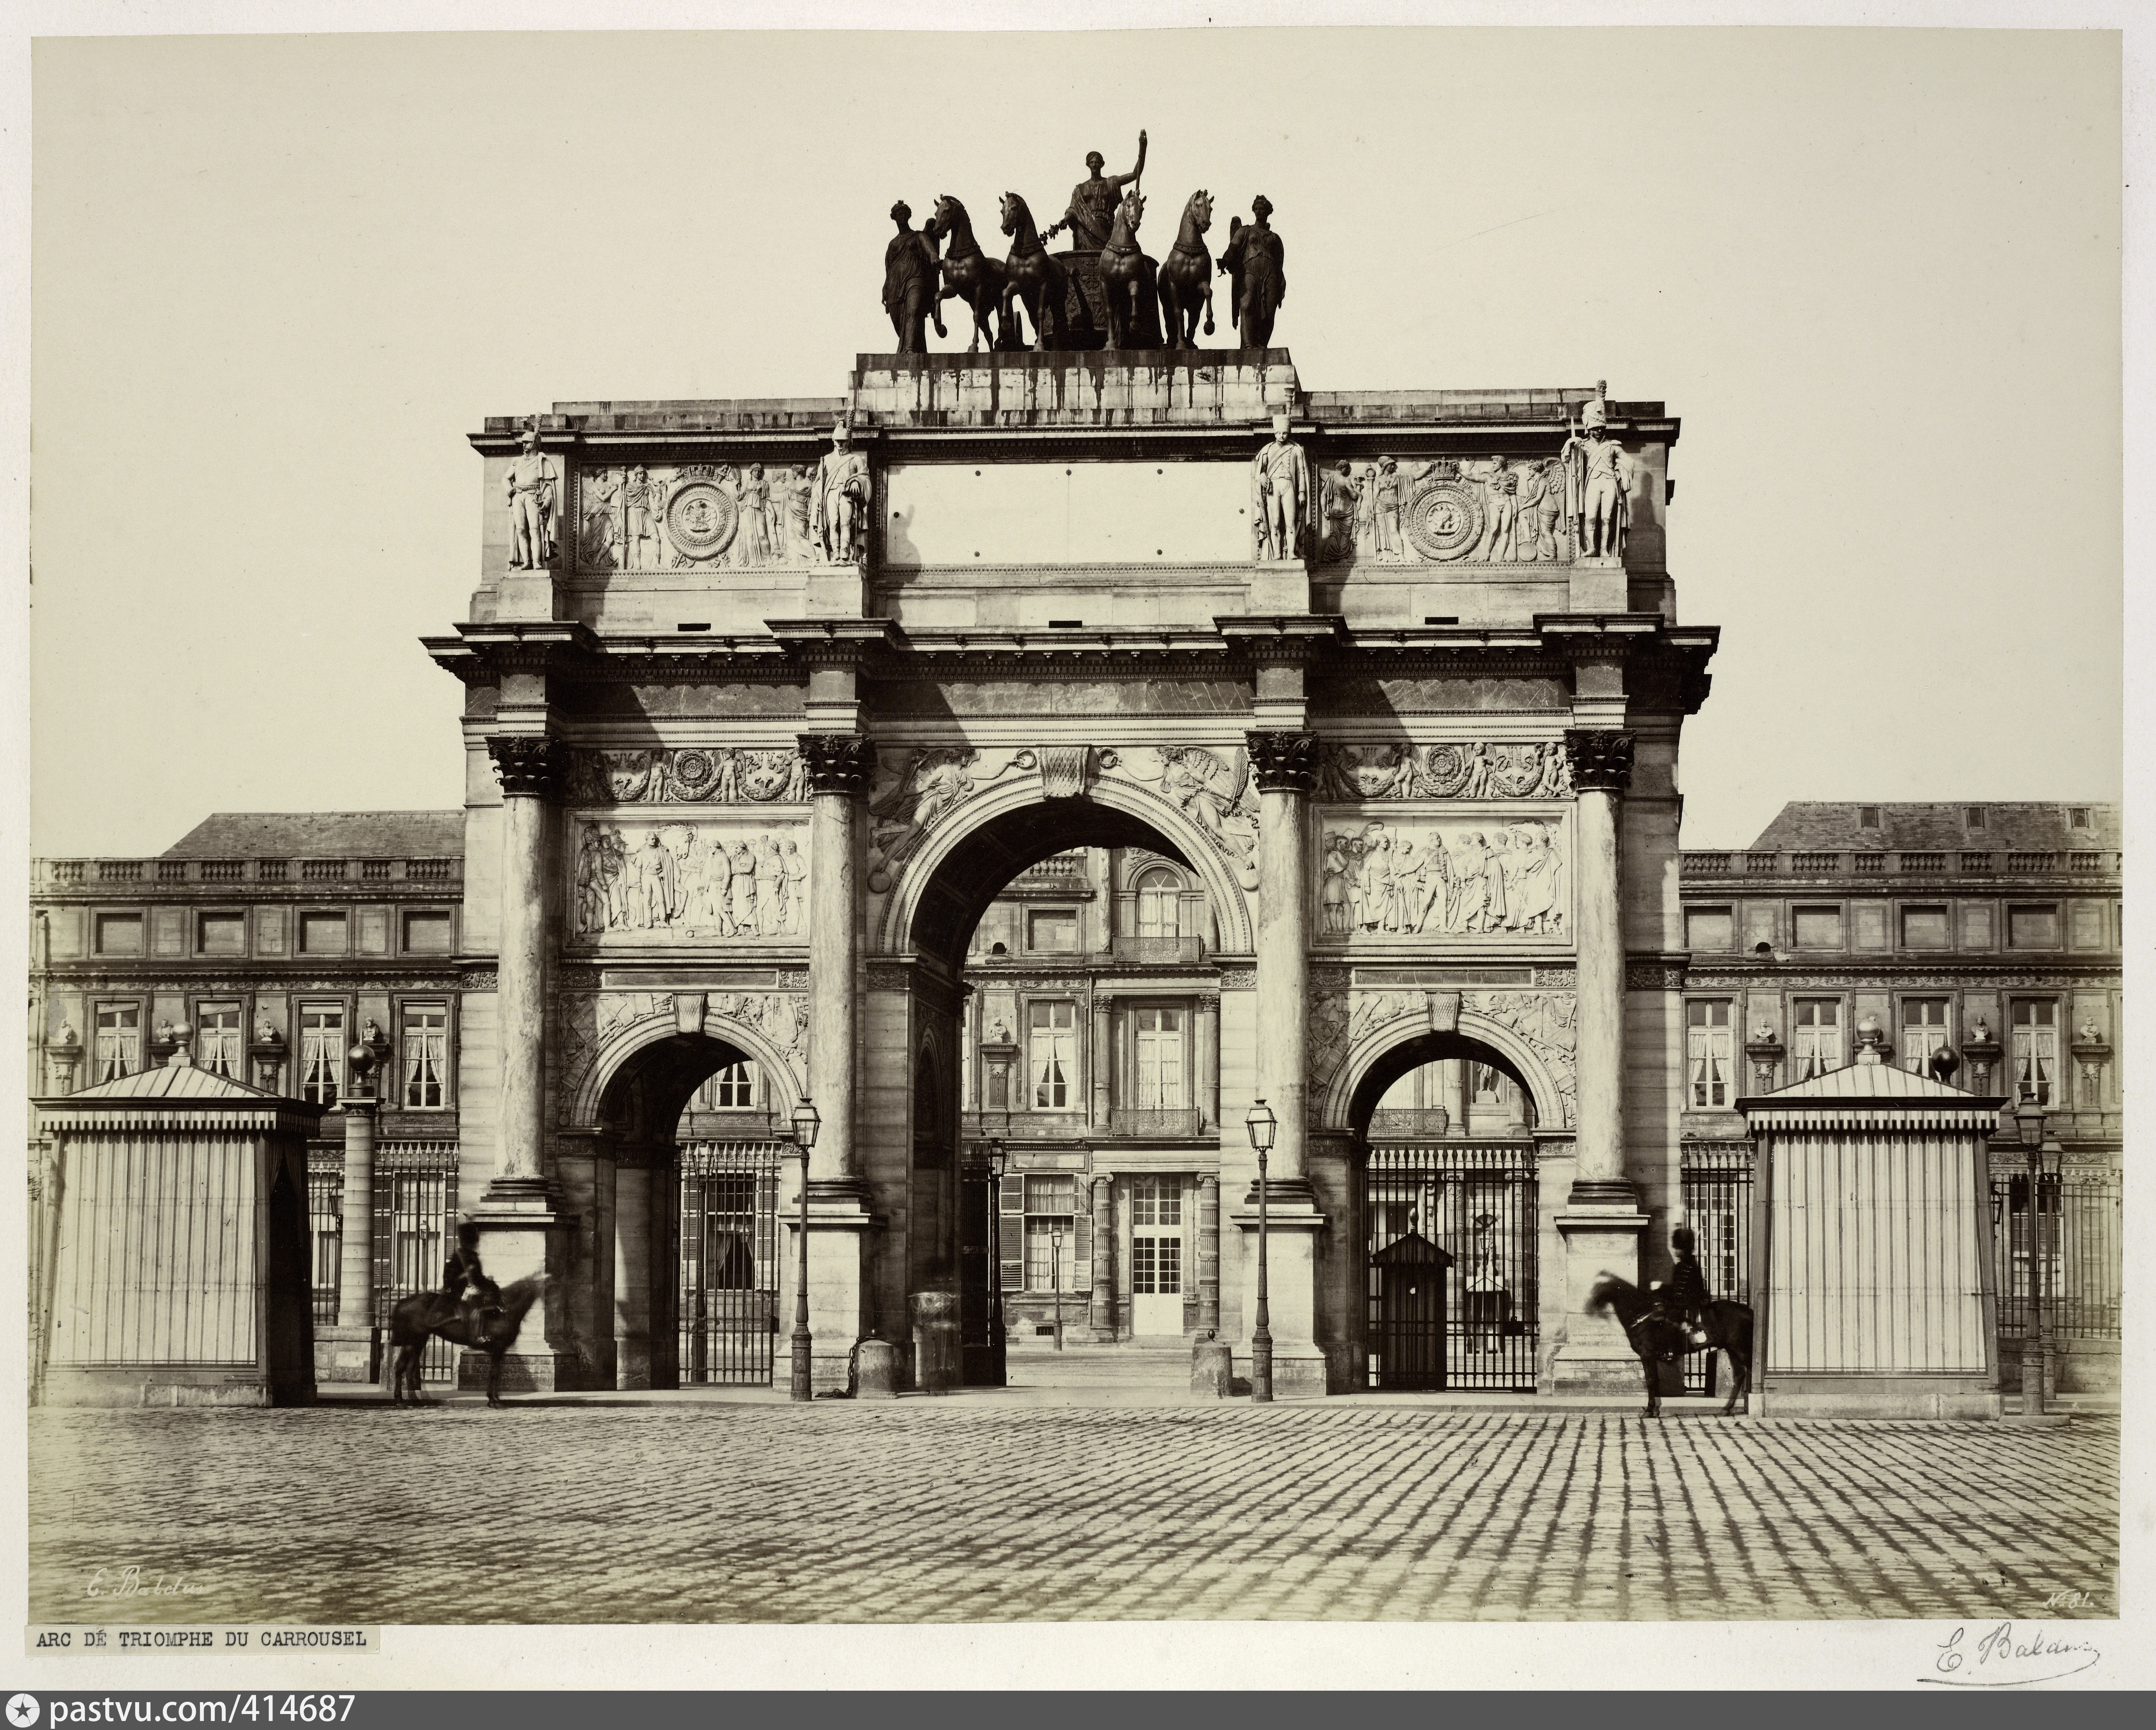 Франция 18 19 веков. Триумфальная арка Париж 19 века. Триумфальная арка в Париже 19 век. Триумфальная арка Франция 19в. Триумфальная арка Карузель.